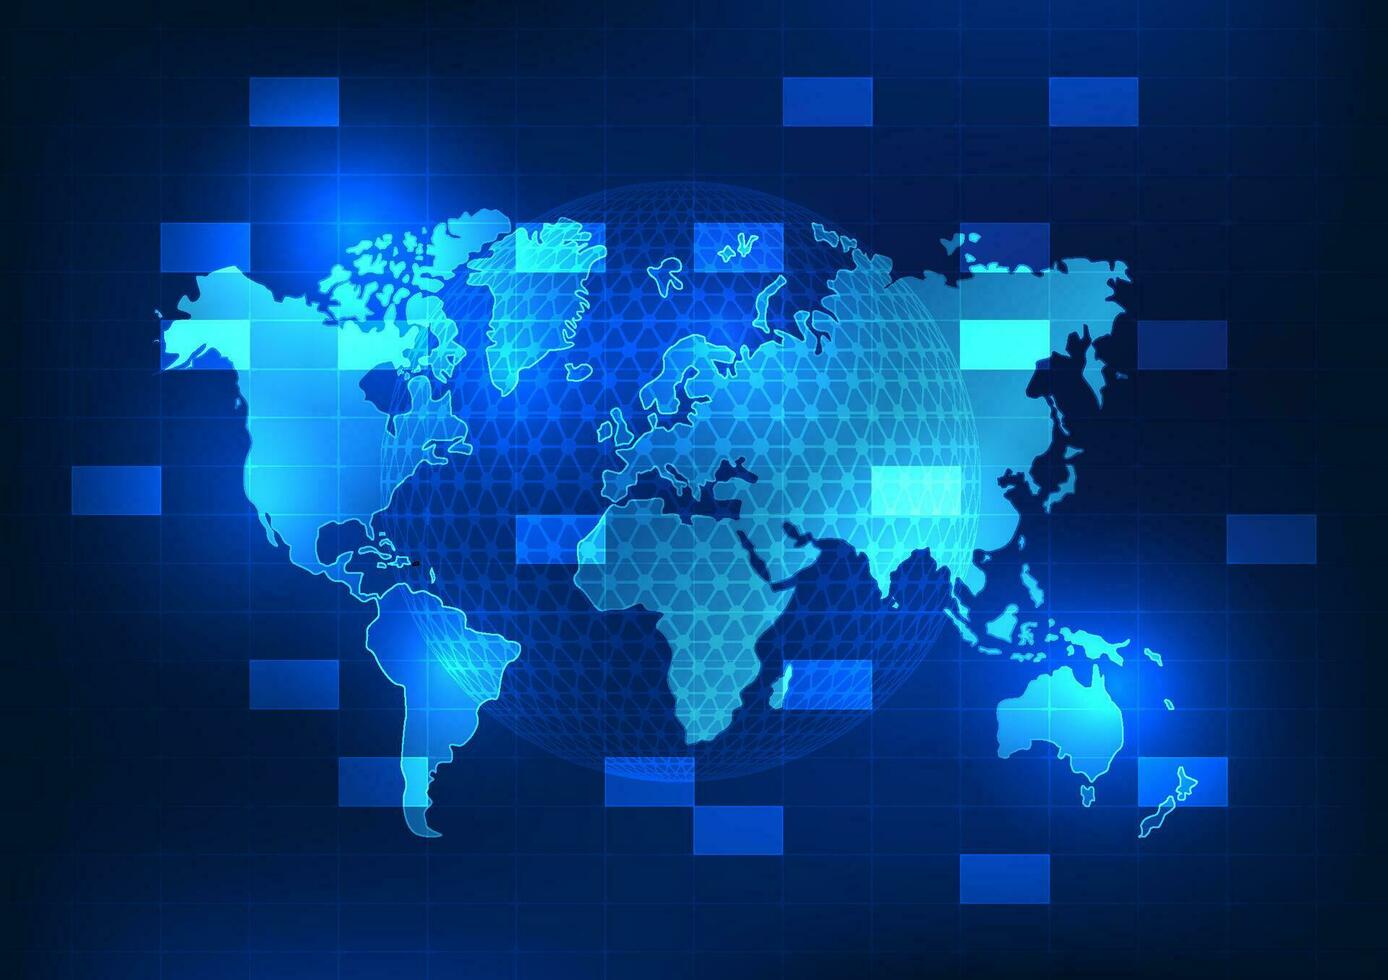 wereld kaart technologie shows de technologie dat is beschikbaar in de omgeving van de wereld naar ontwikkelen leven conditie, economie, en communicatie. vinden informatie in de omgeving van de wereld vector